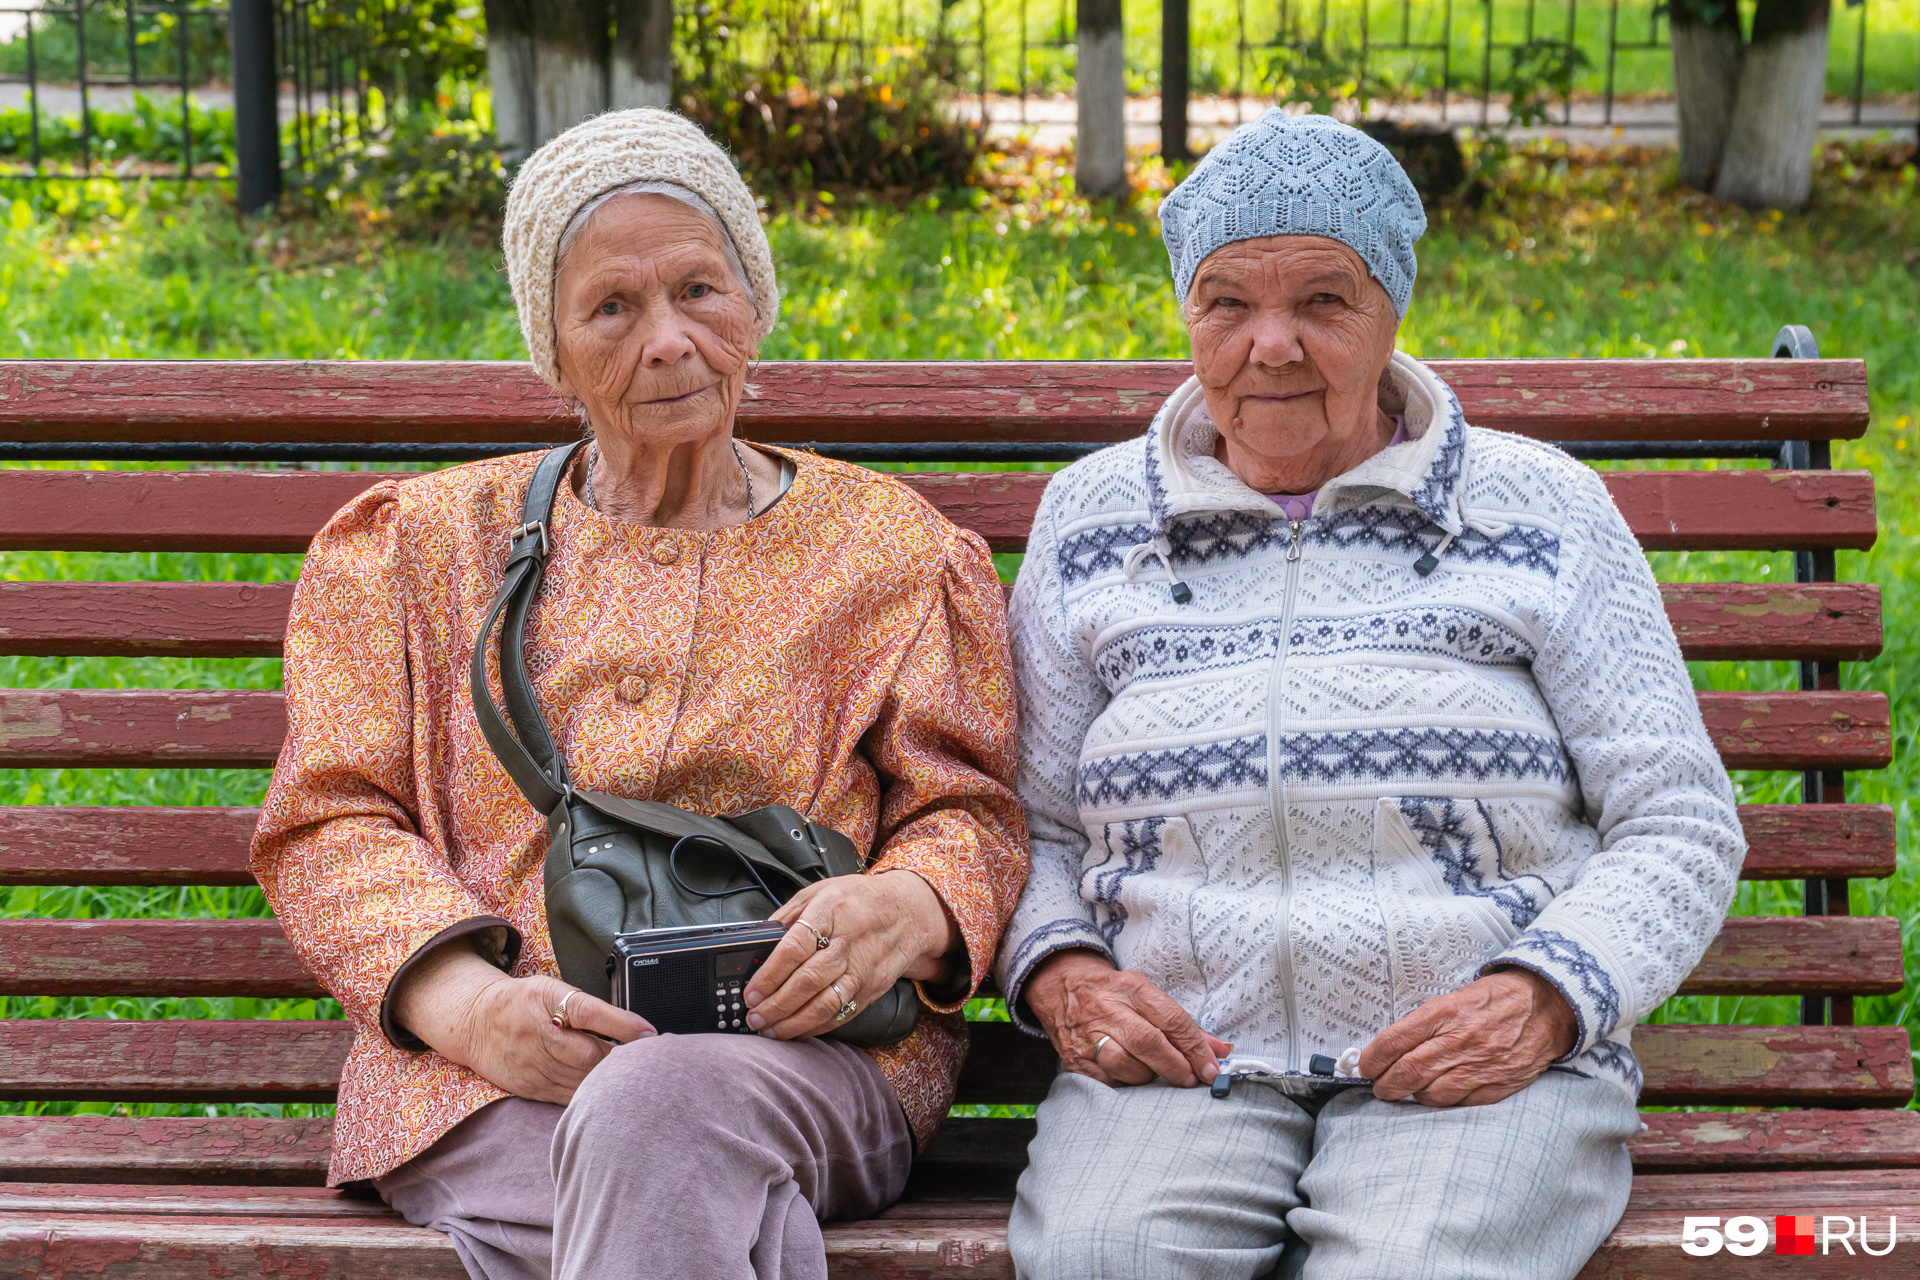 Этих милых бабушек мы тоже встретили в сквере. Из их радиоприемника раздавалась «Вишневая девятка»